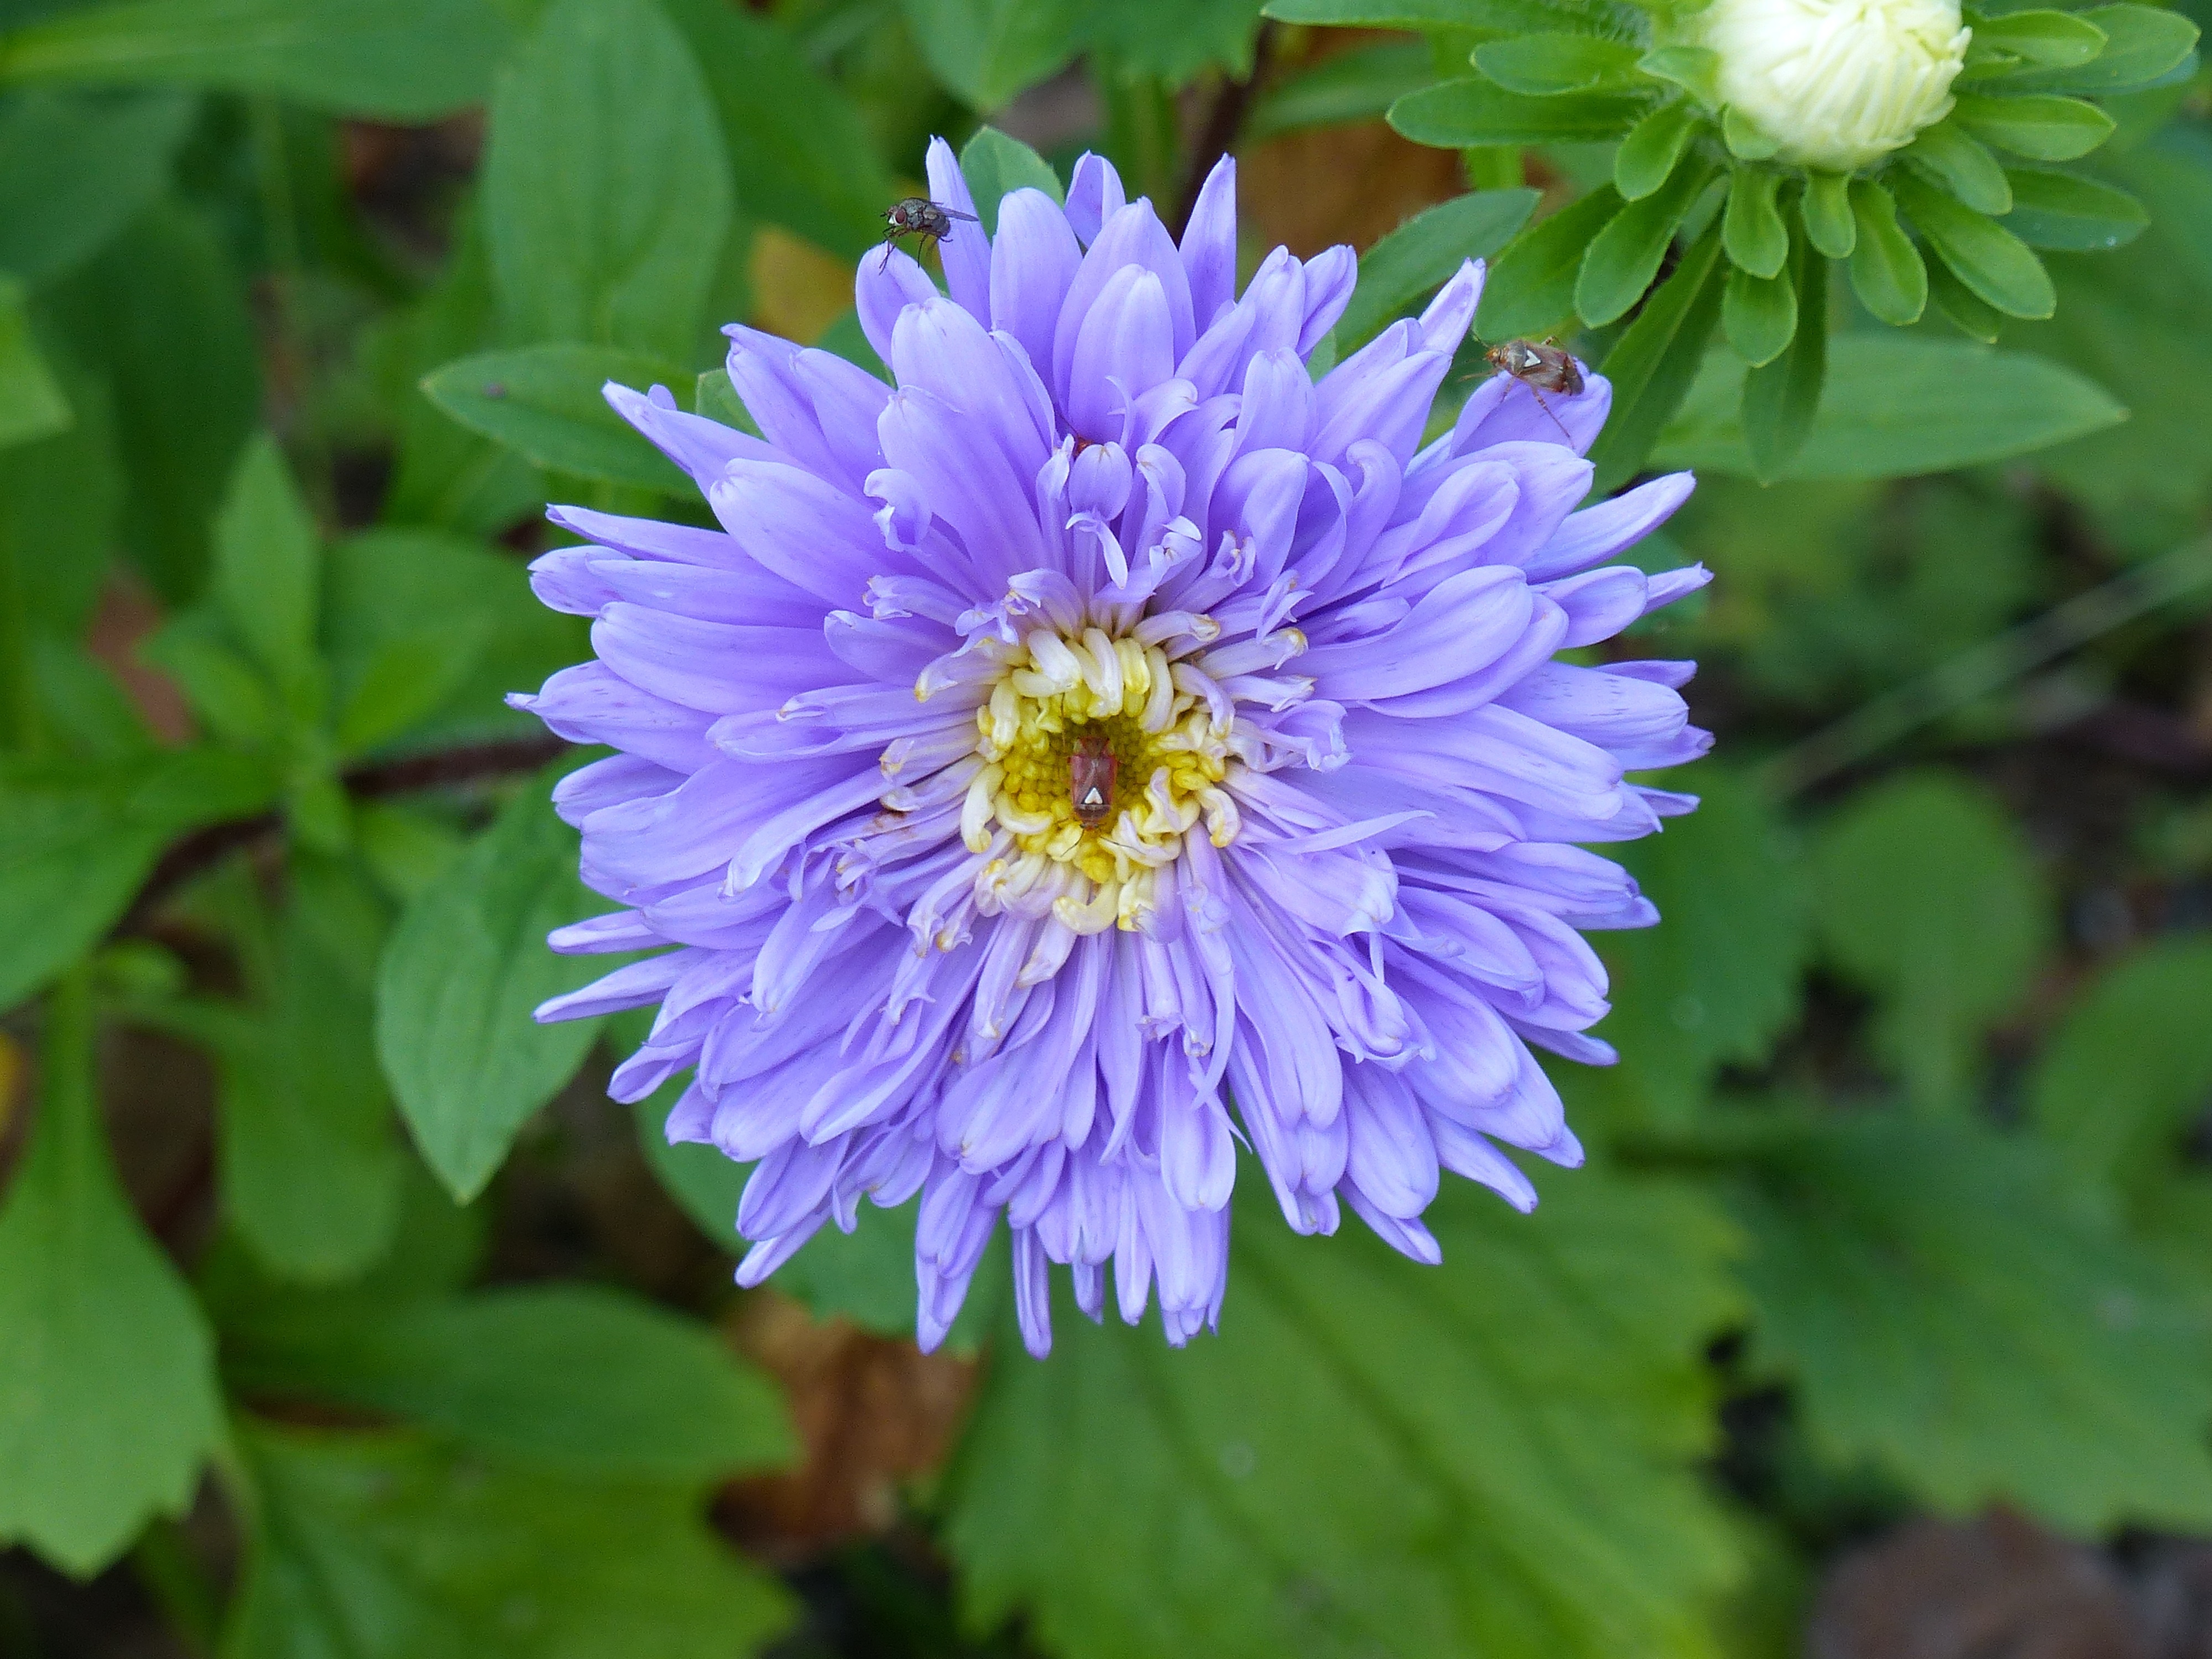 purple daisy like flower